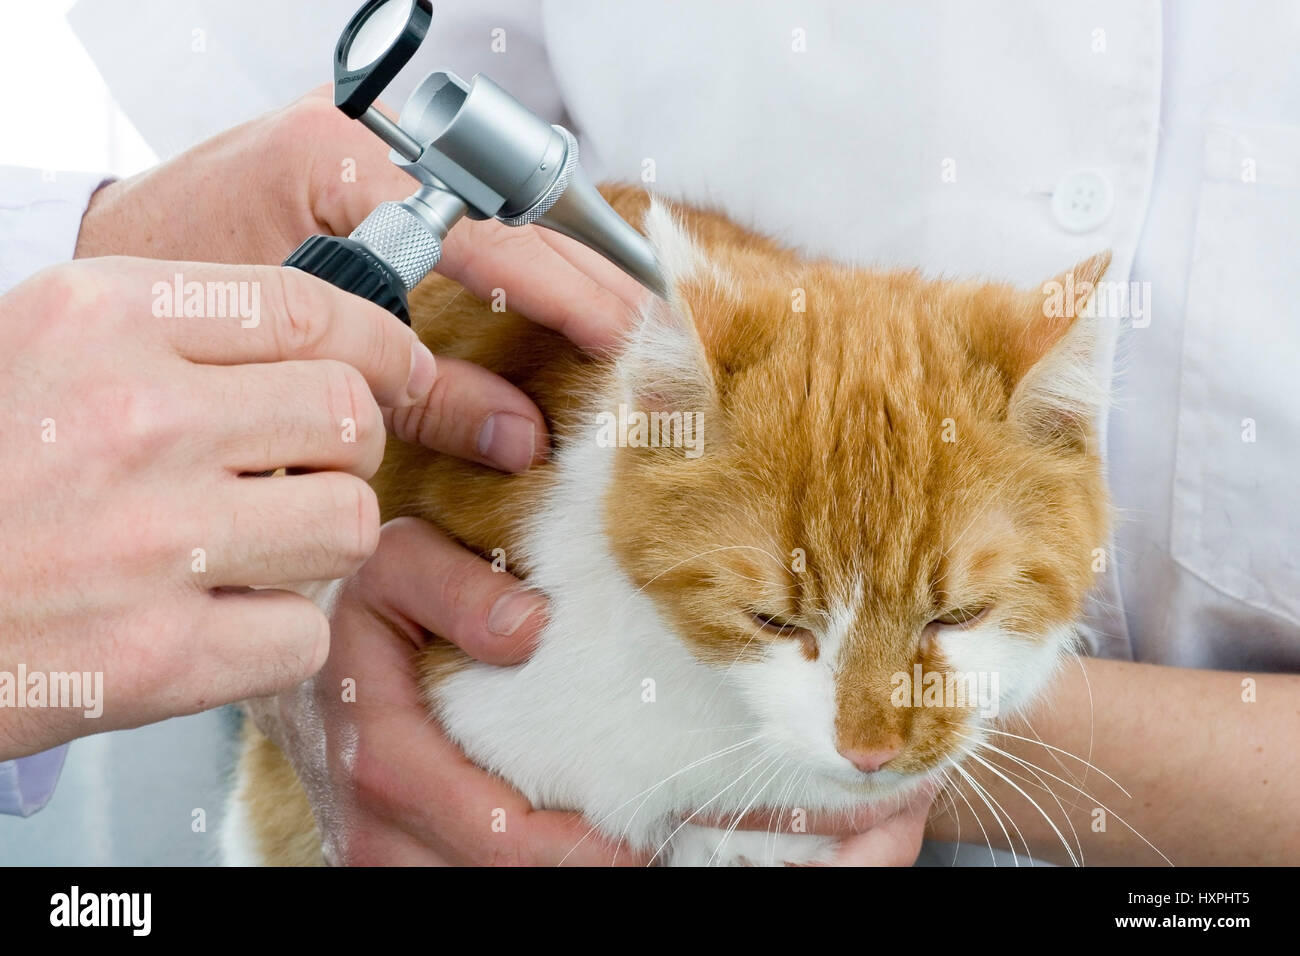 Oreilles de chat est examiné, Katze bekommt Ohren untersucht Banque D'Images